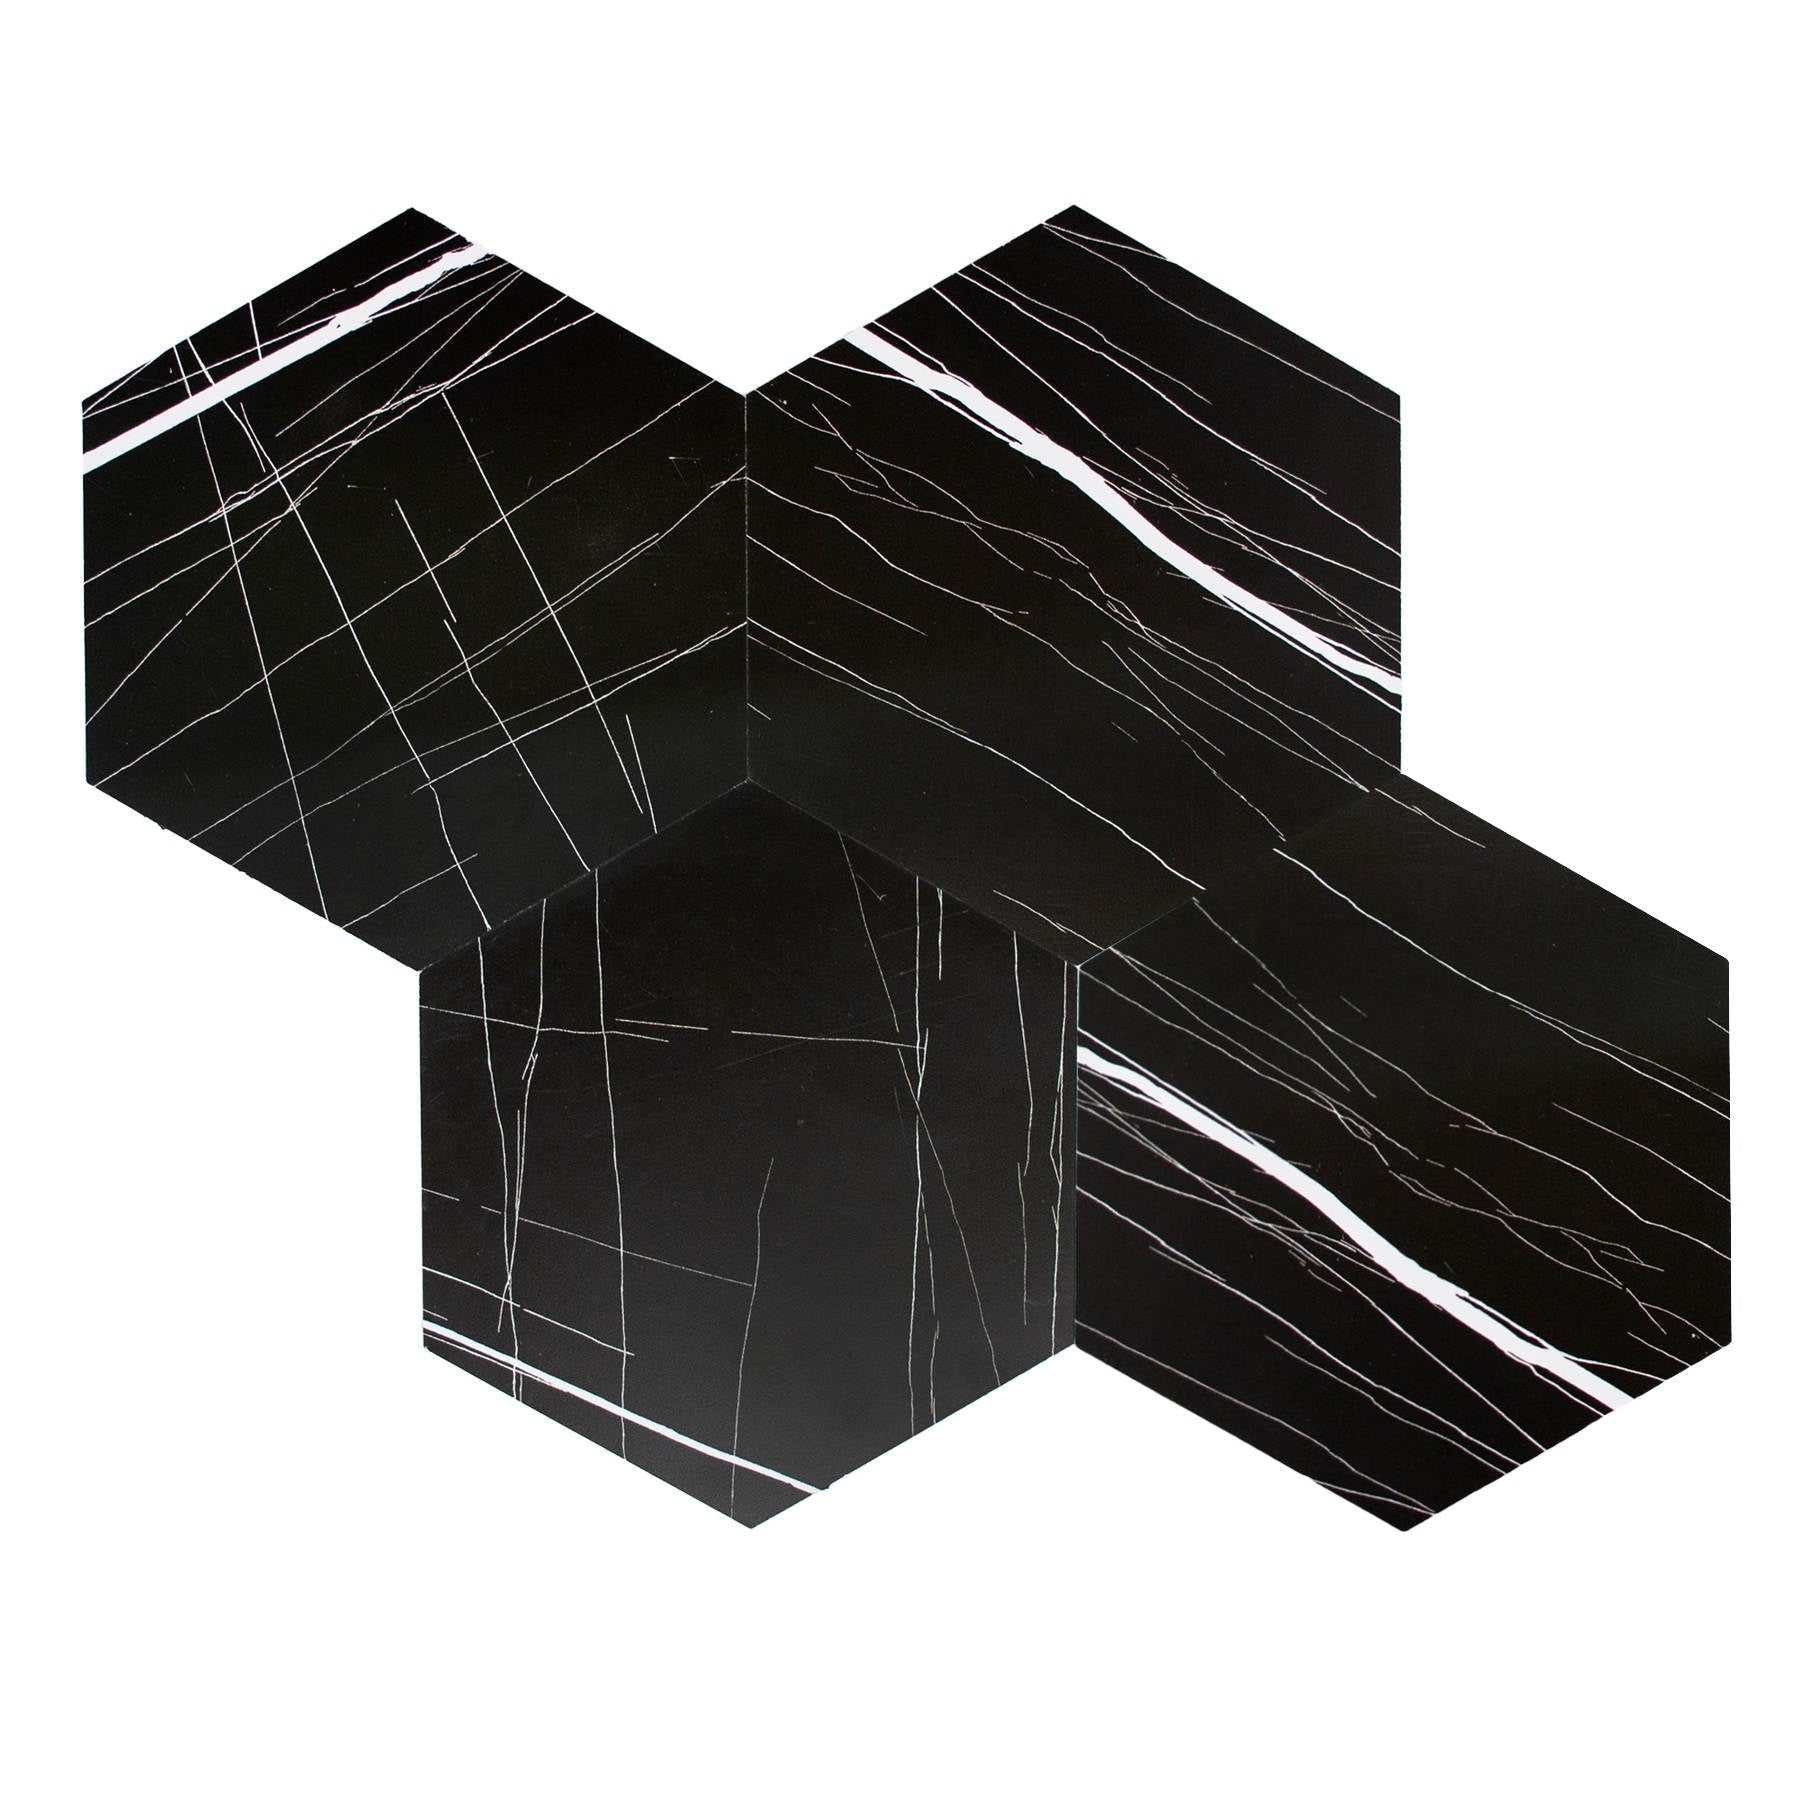 XL Hexagon Black White